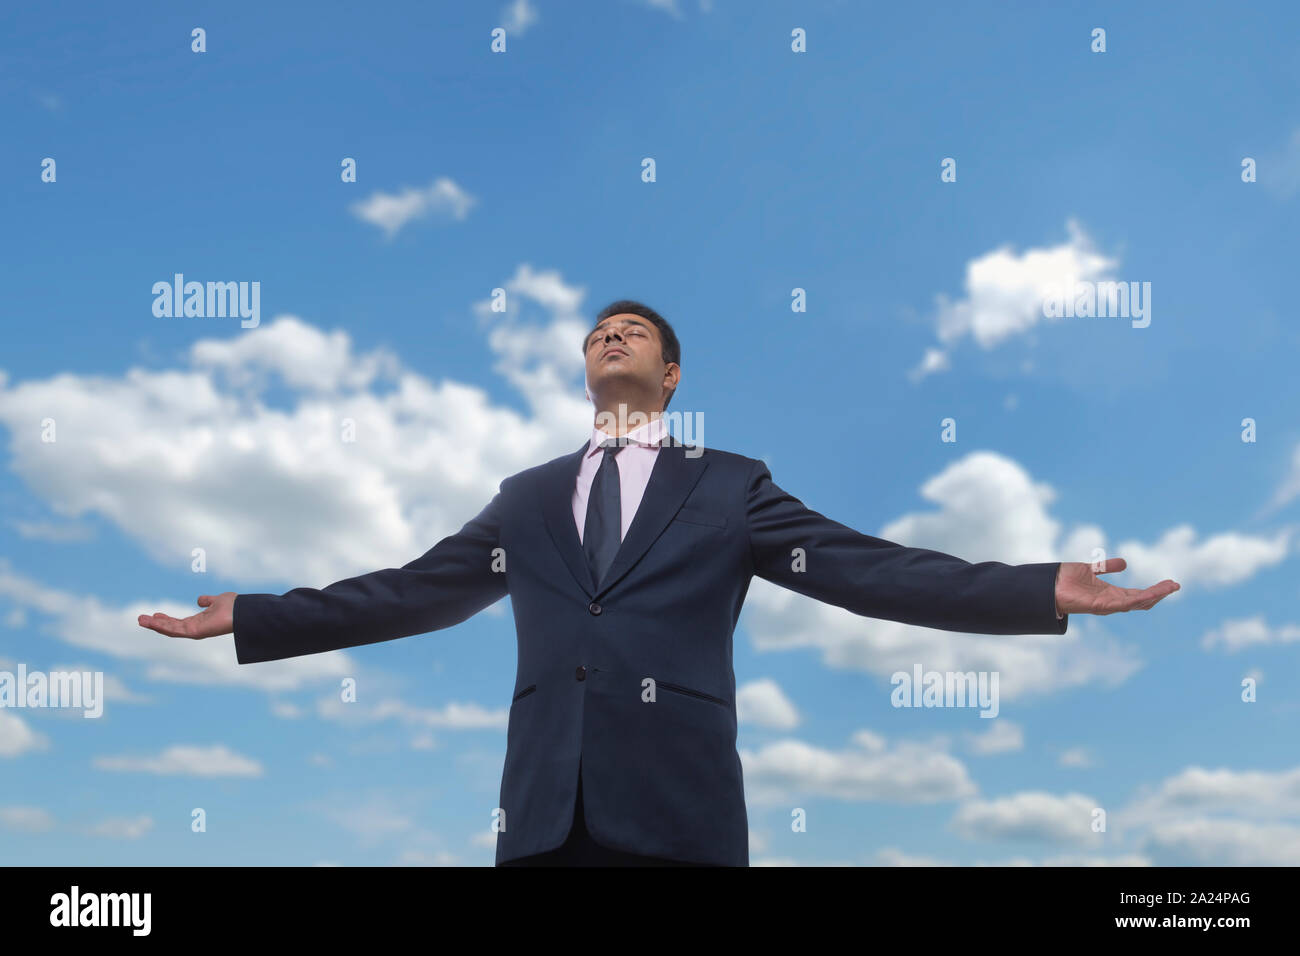 Homme d'affaires de vêtements formels debout avec les bras ouverts et les yeux fermés contre un ciel nuageux ciel bleu Banque D'Images